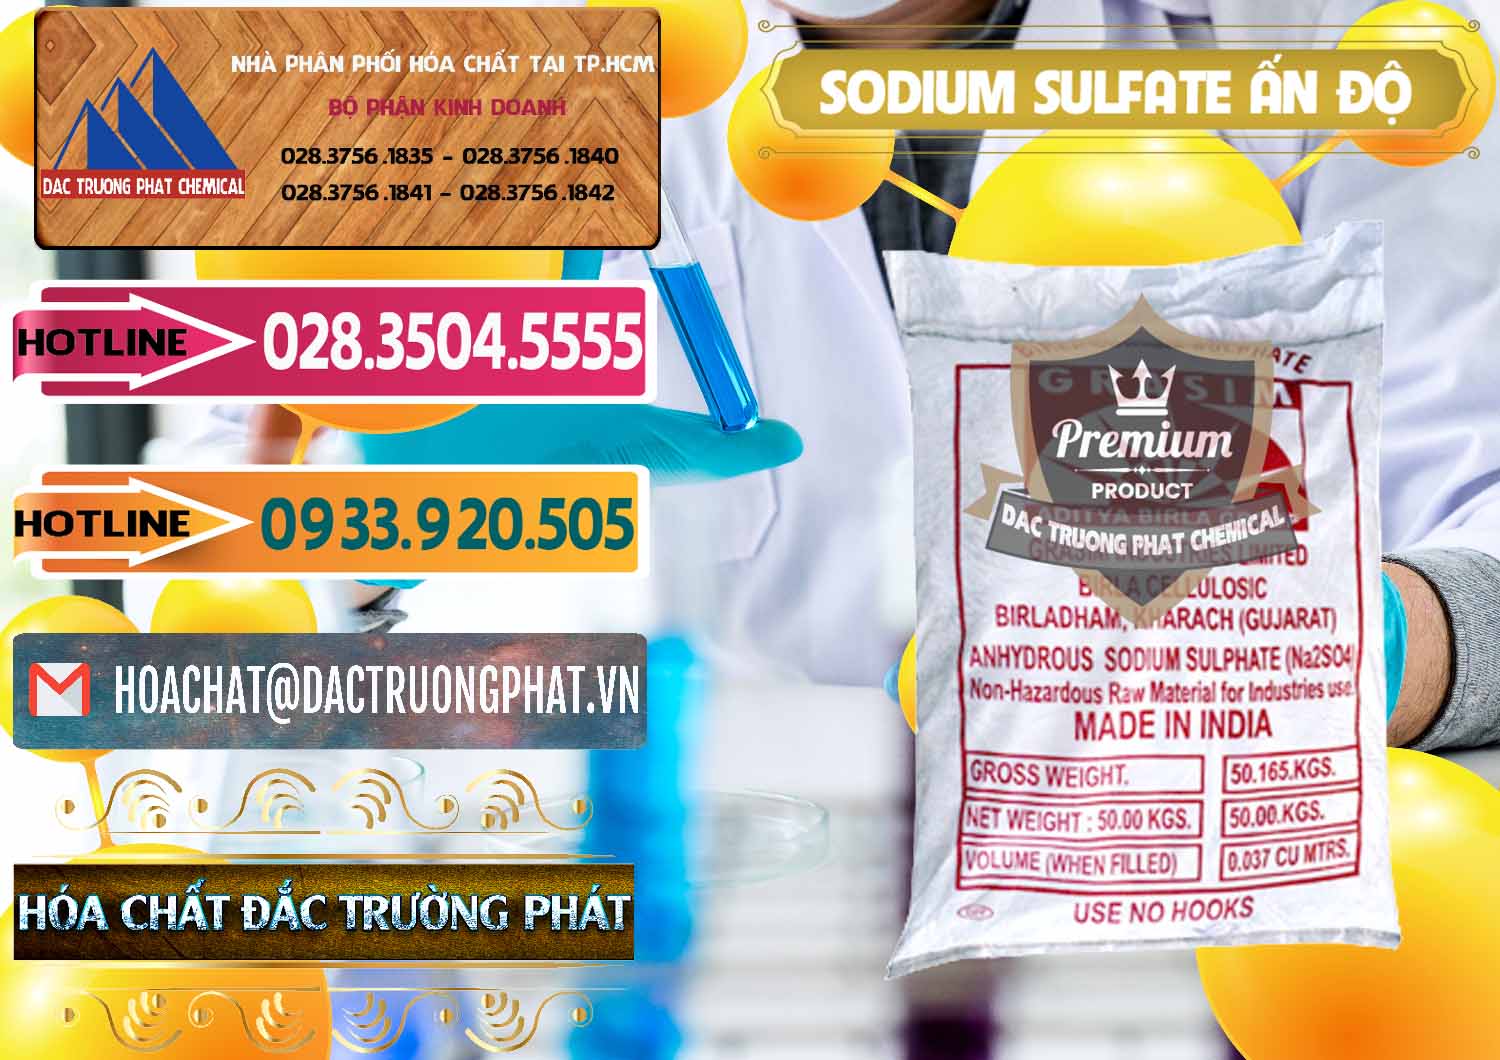 Đơn vị cung cấp & bán Sodium Sulphate - Muối Sunfat Na2SO4 Aditya Birla Grasim Ấn Độ India - 0462 - Cty phân phối - nhập khẩu hóa chất tại TP.HCM - dactruongphat.vn